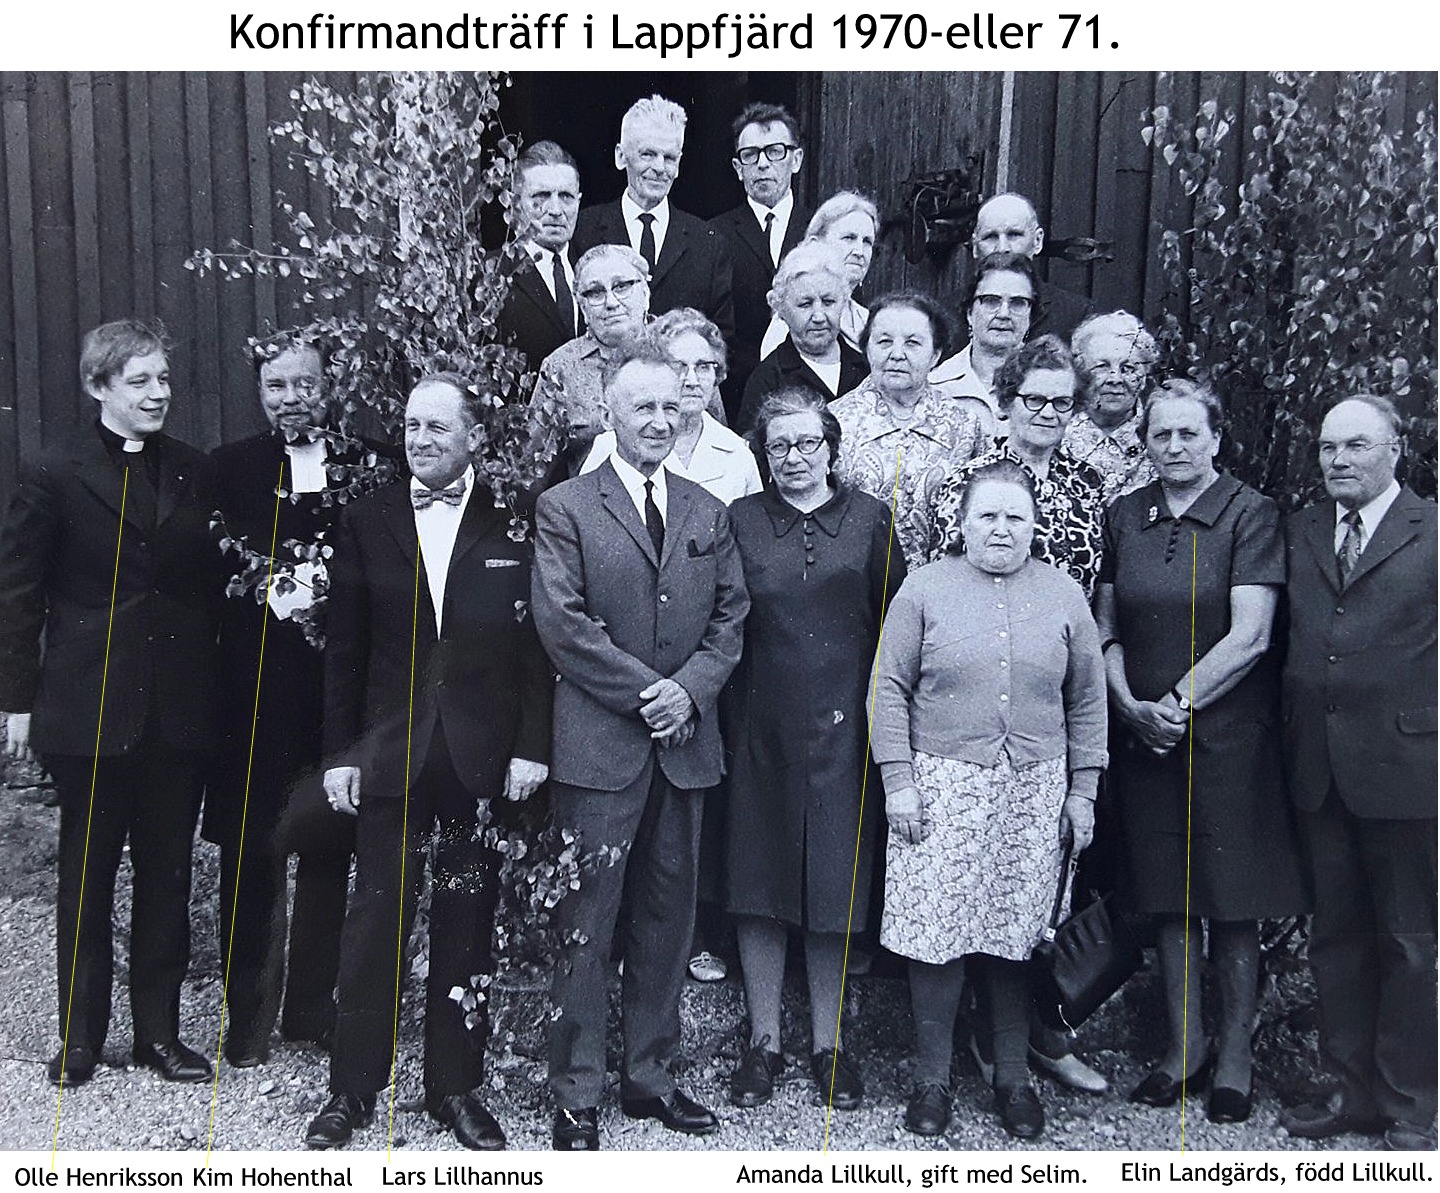 Elin Landgärds 50-års konfirmationsfoto 1971.